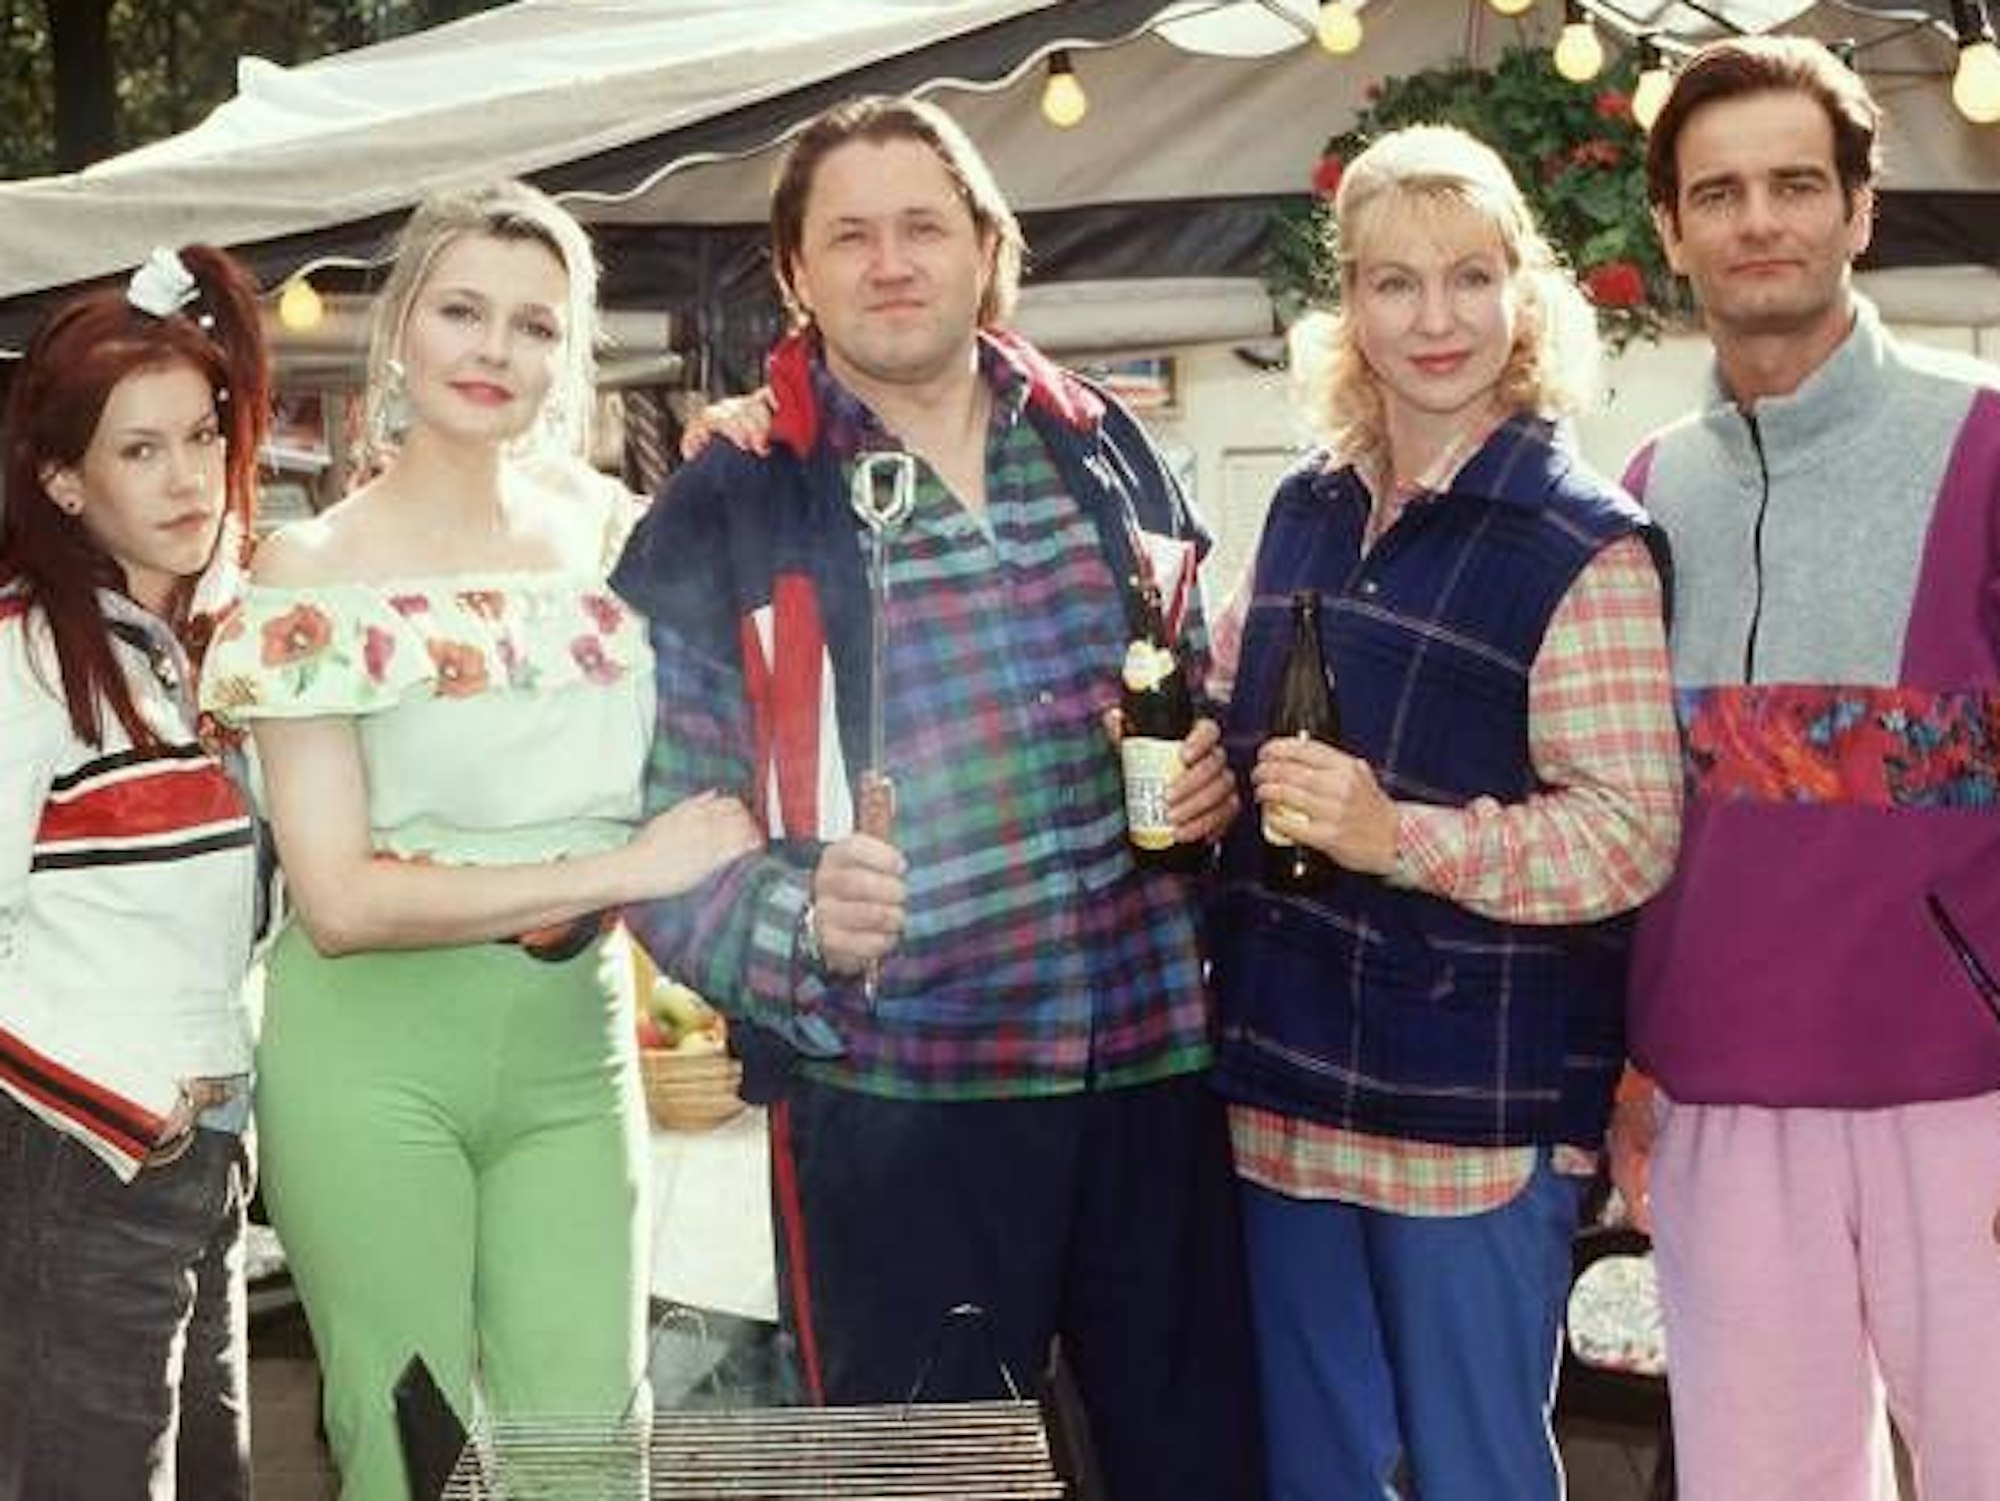 Szene aus der Serie „Die Camper“ (ca. 1997) mit Michael Brandner, Sabine Kaack, Wolke Hegenbarth, Heinrich Schafmeister und Katharina Schubert.